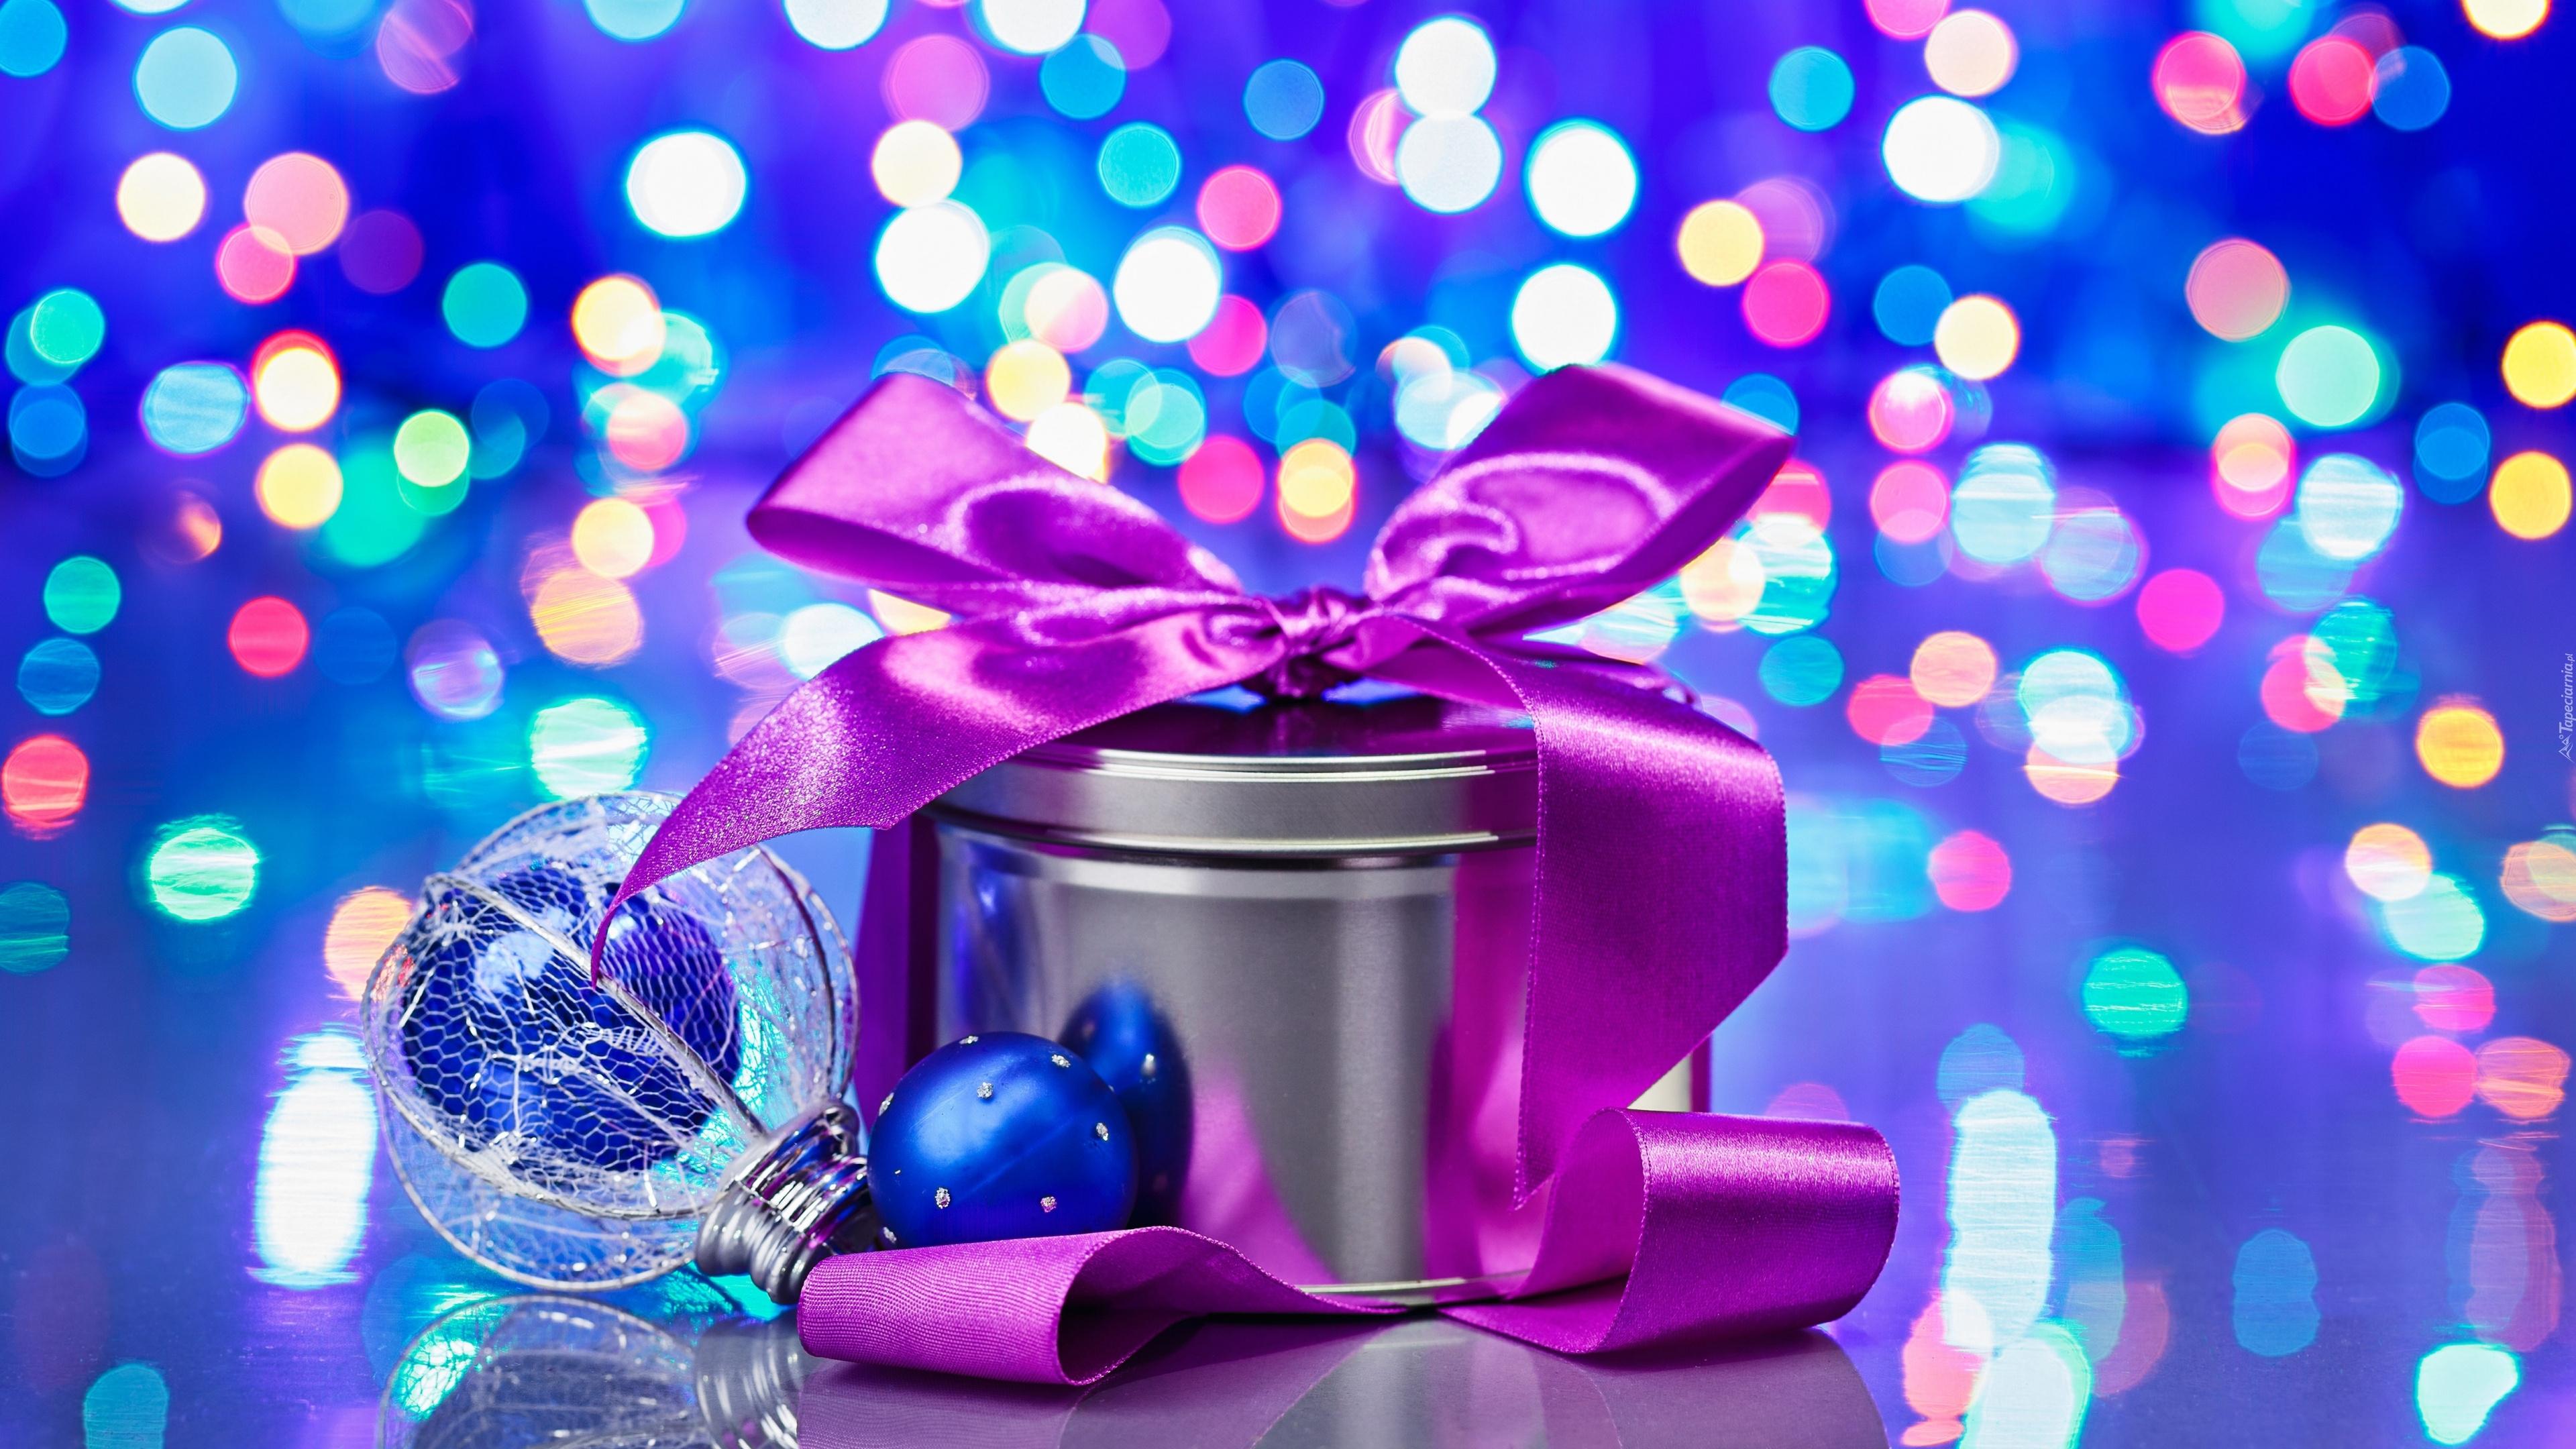 Le Jour De Noël, Nouvelle Année, Purple, Blue, Violette. Wallpaper in 3840x2160 Resolution